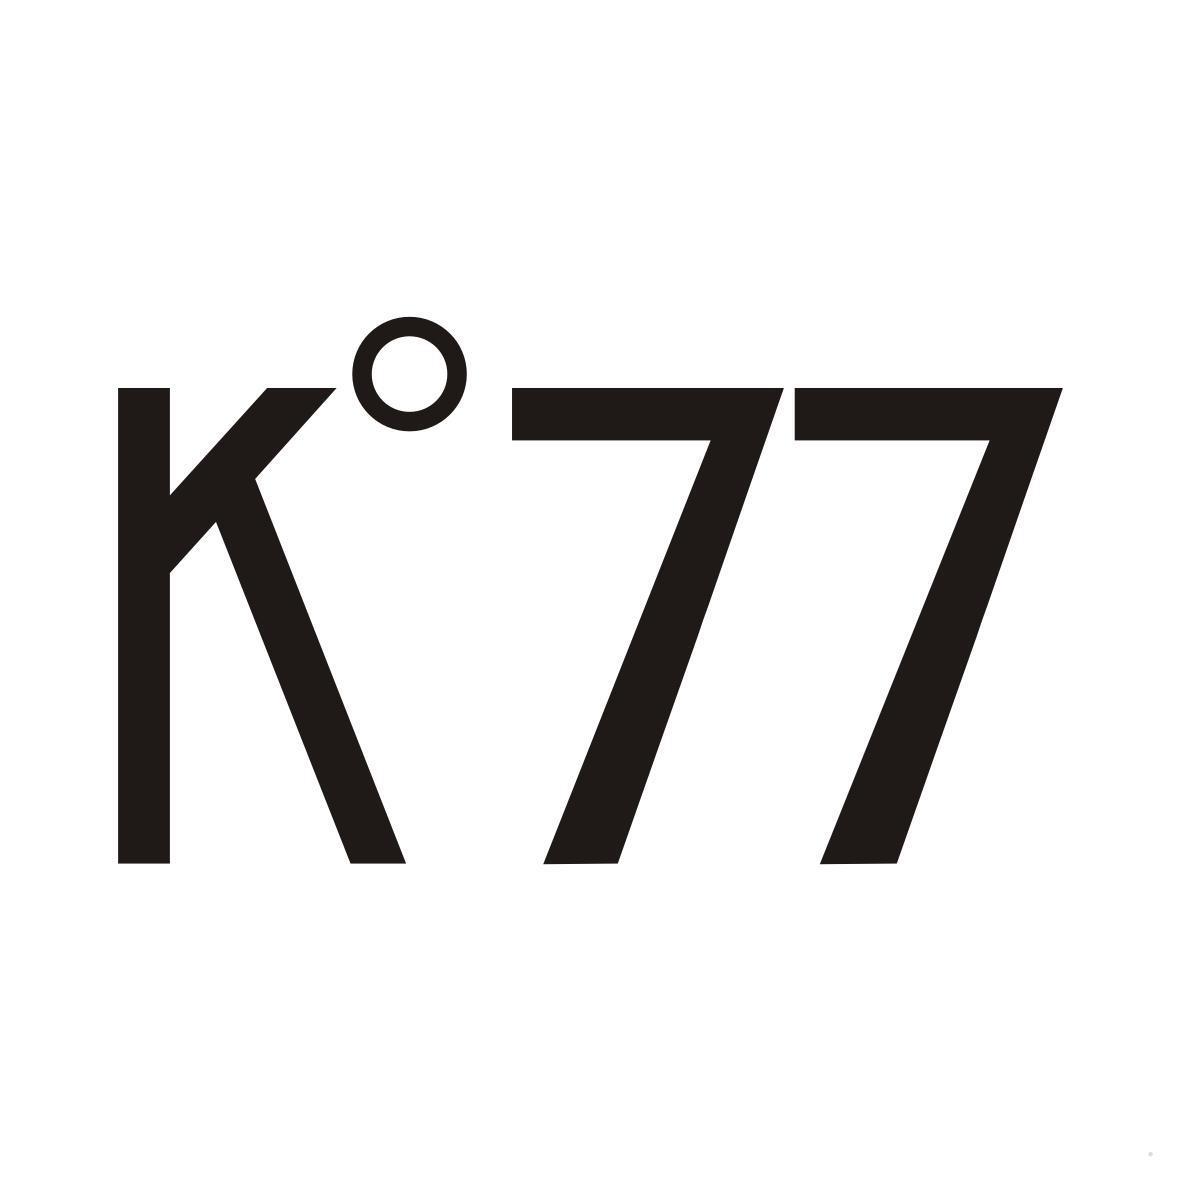 K°77